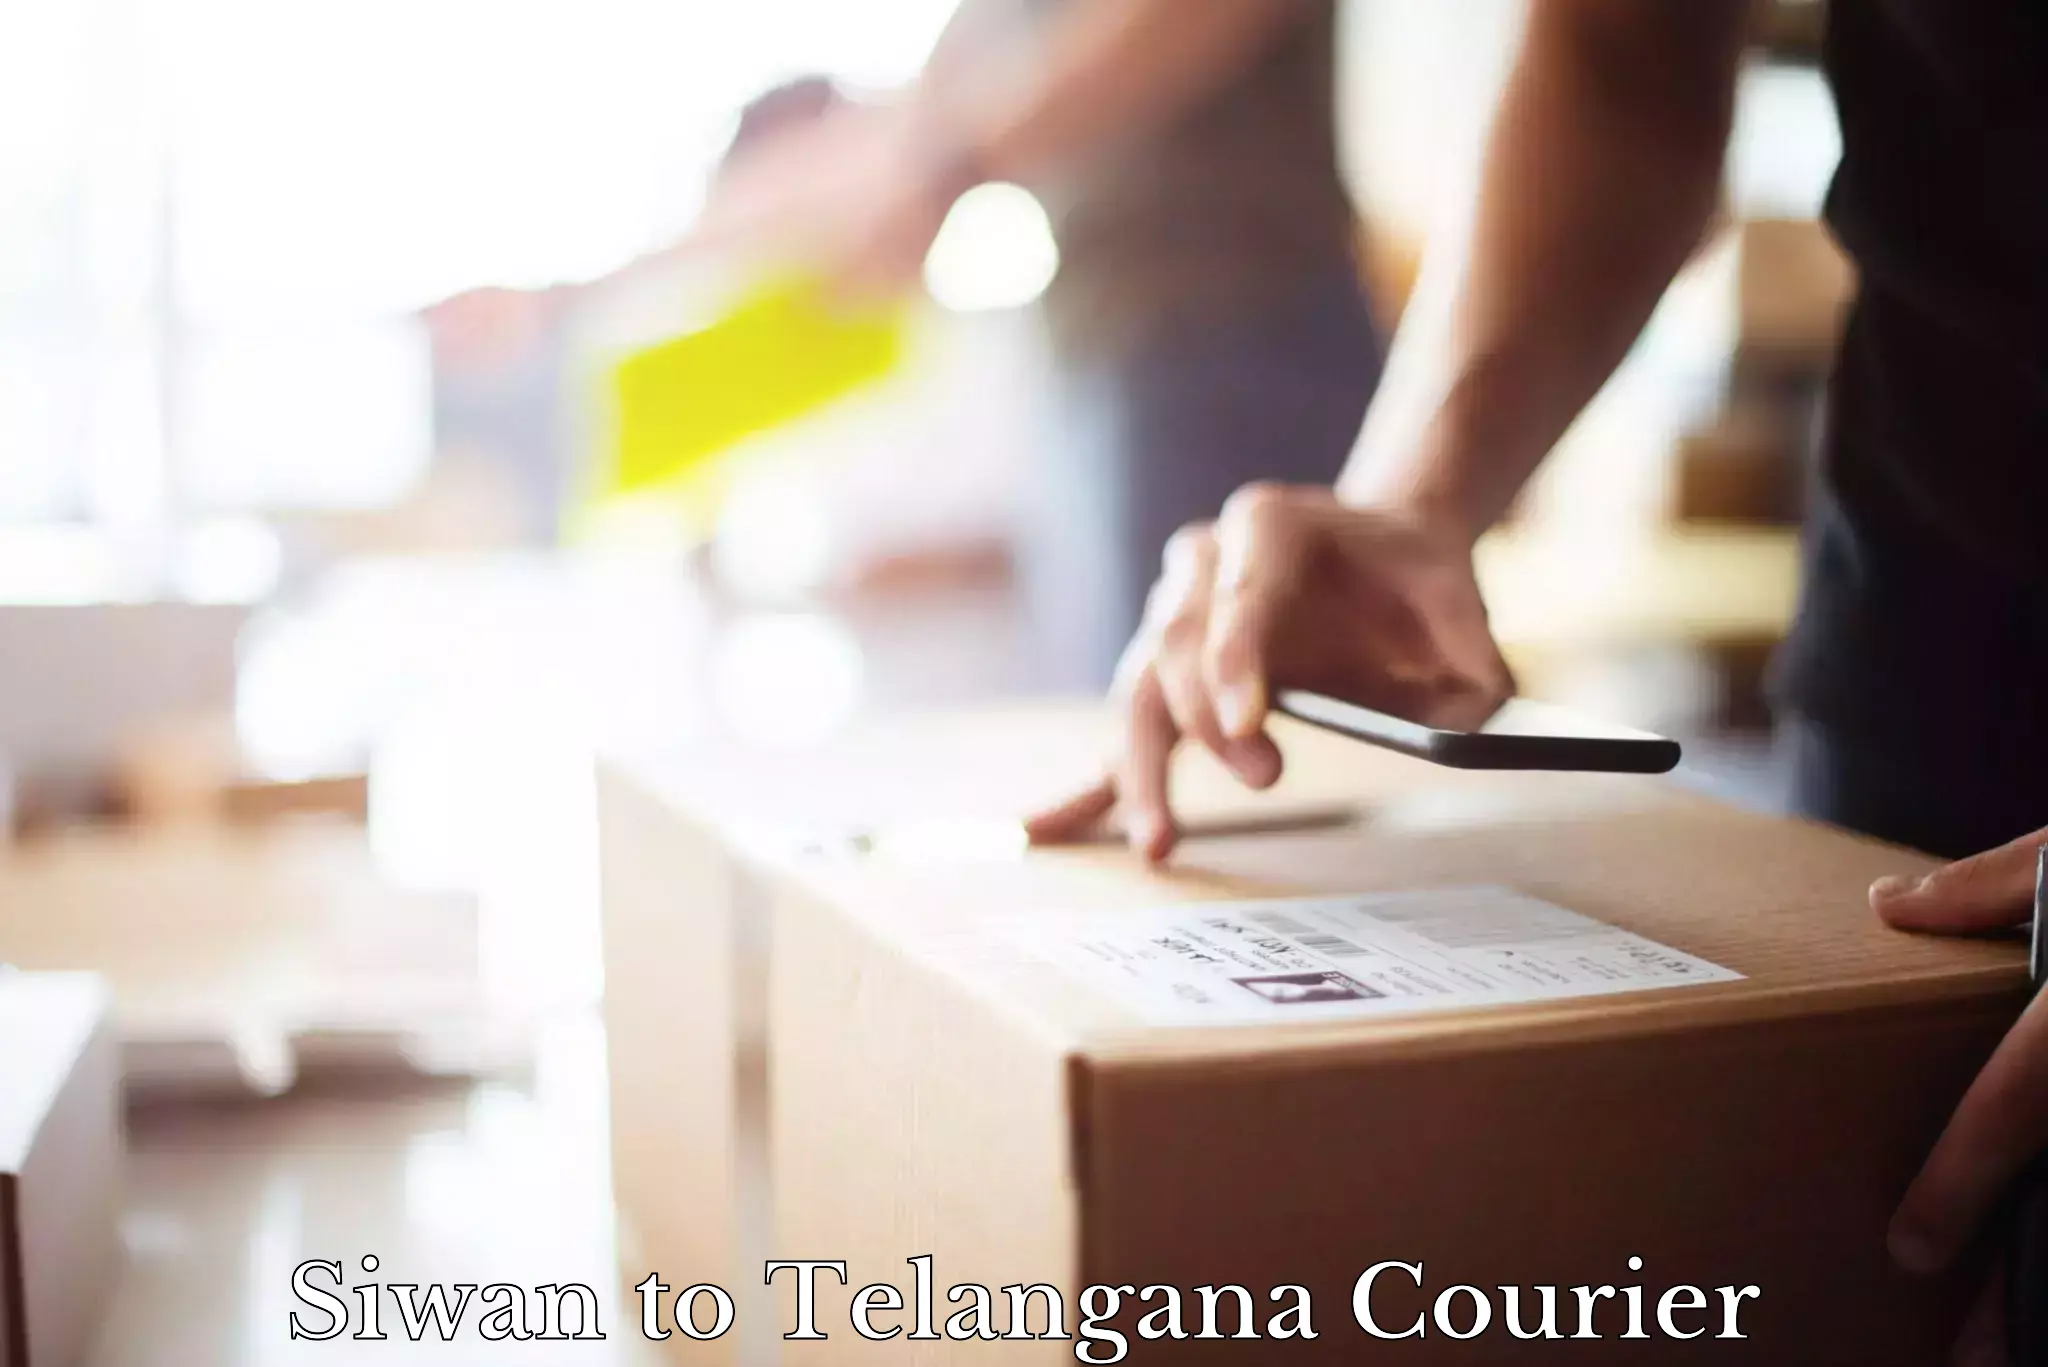 Global logistics network Siwan to Telangana